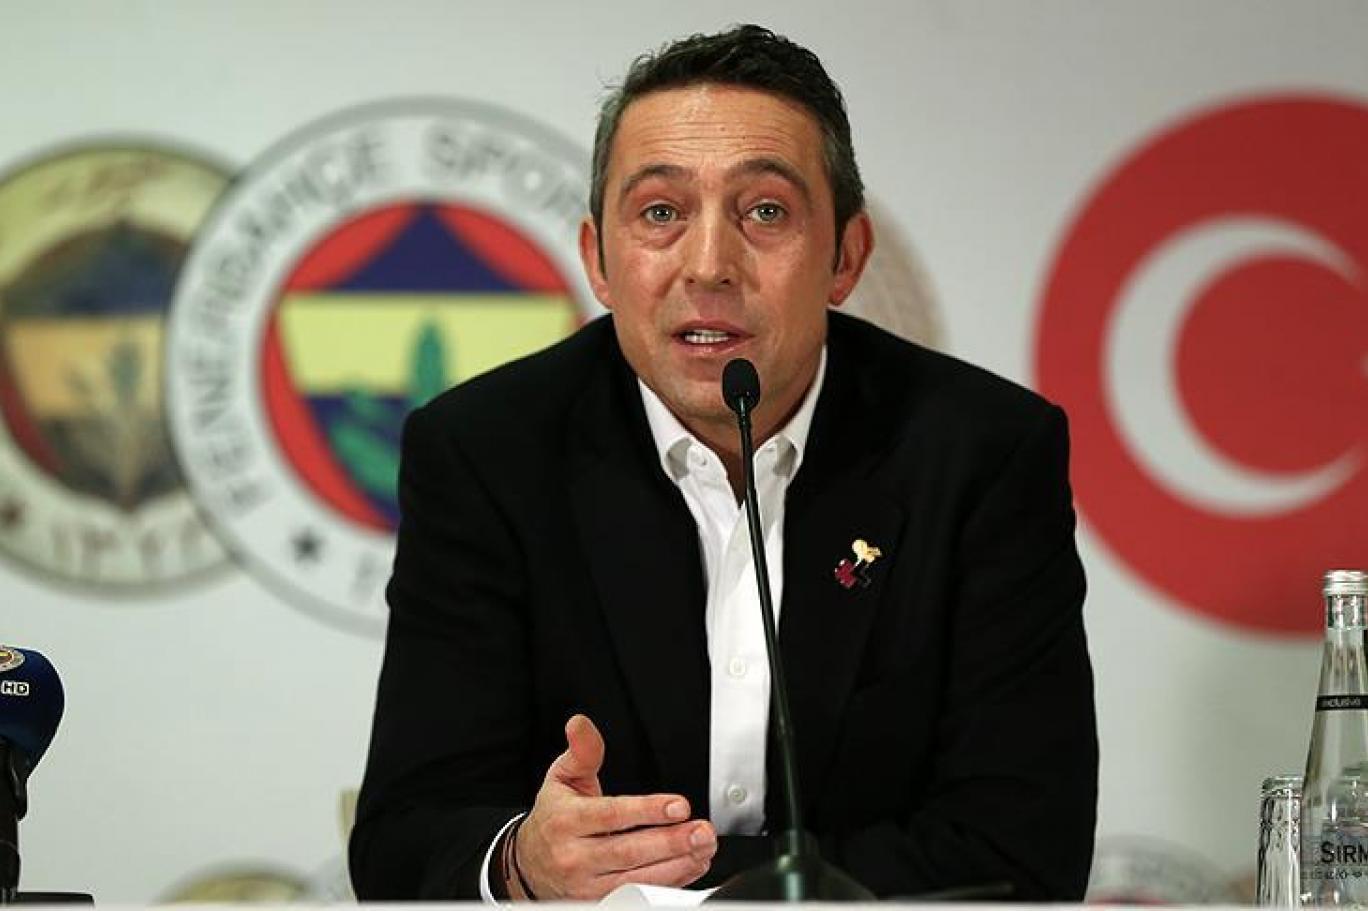 Ali Koç: Fenerbahçe’ye yakışan bir takım oluşturacağız